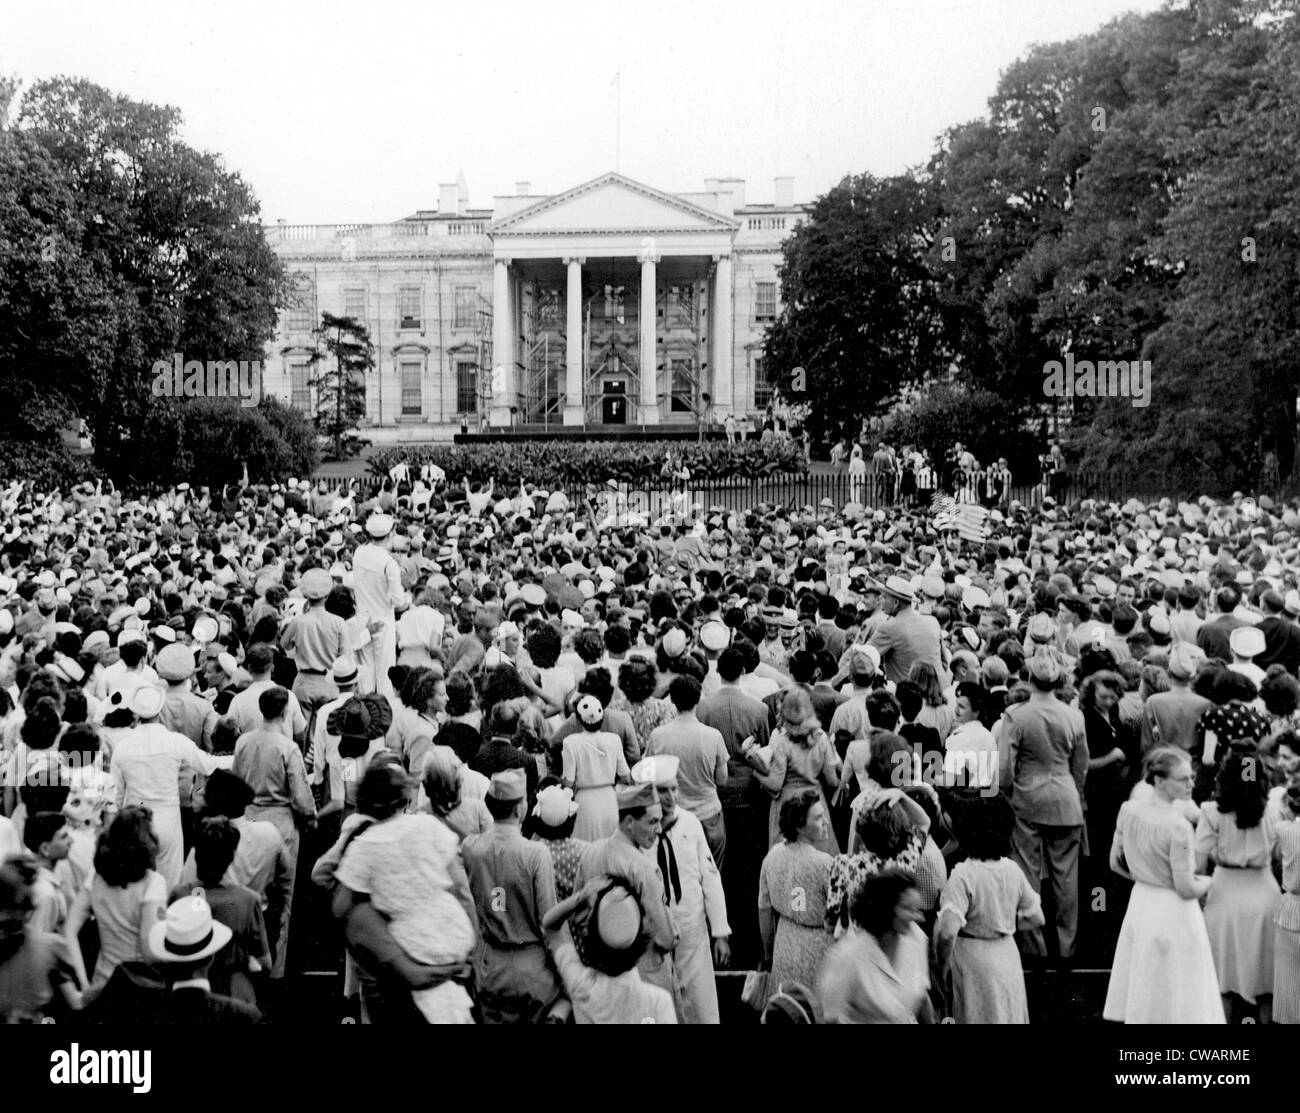 WASHINGTON D.C., Washington Bureau Foto der Menge nach der Kapitulation Japans, 17. August 1945. Höflichkeit: CSU Archive / Stockfoto